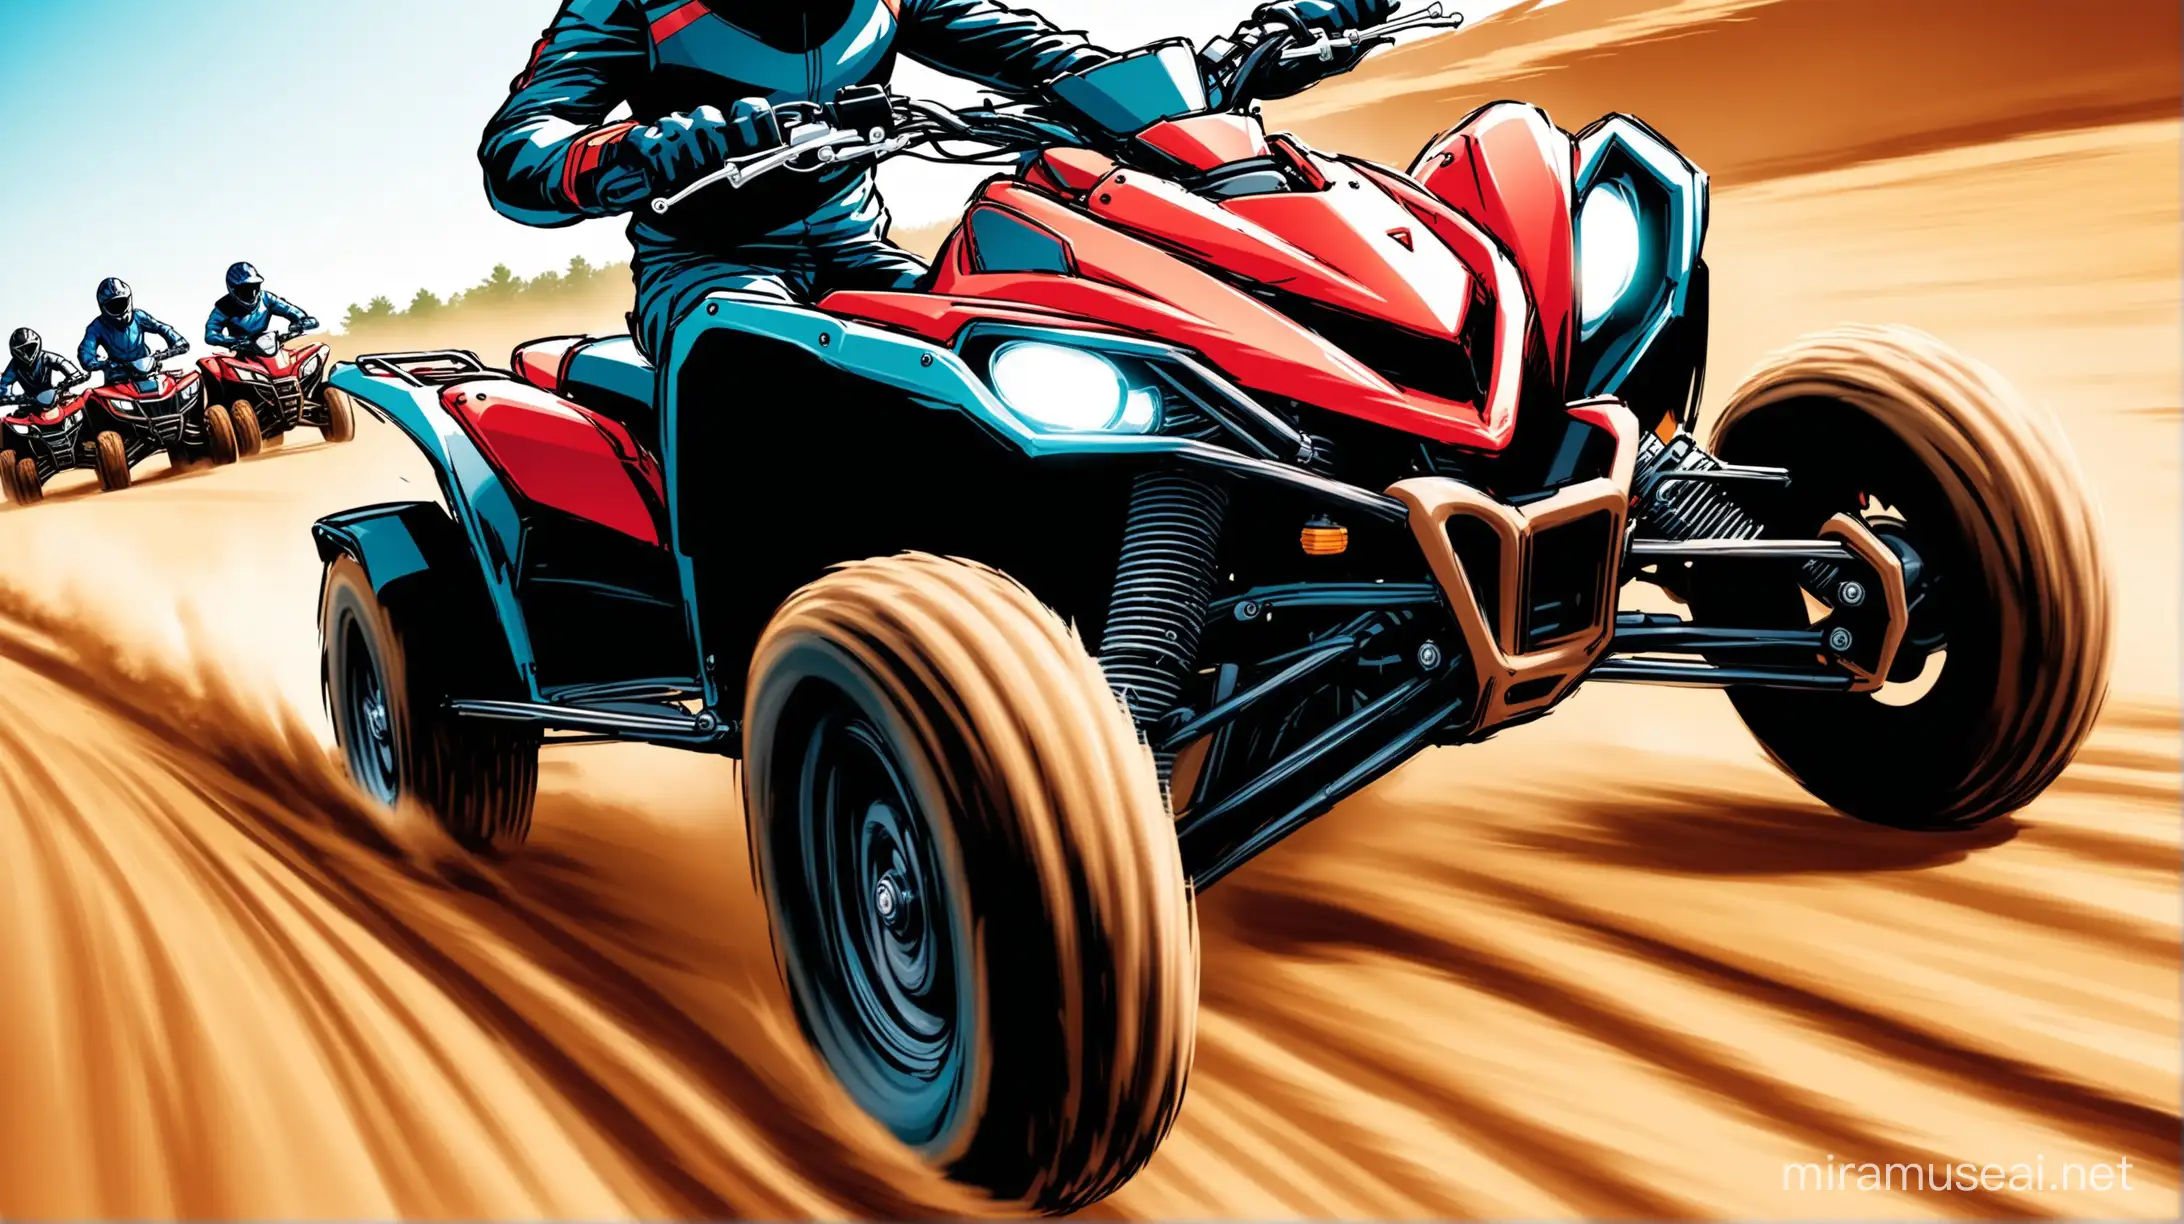 Стилизованная красочная динамичная фотография едущих рядом в паре двухколесного мотоцикла и квадроцикла. Крупный план. Обложка